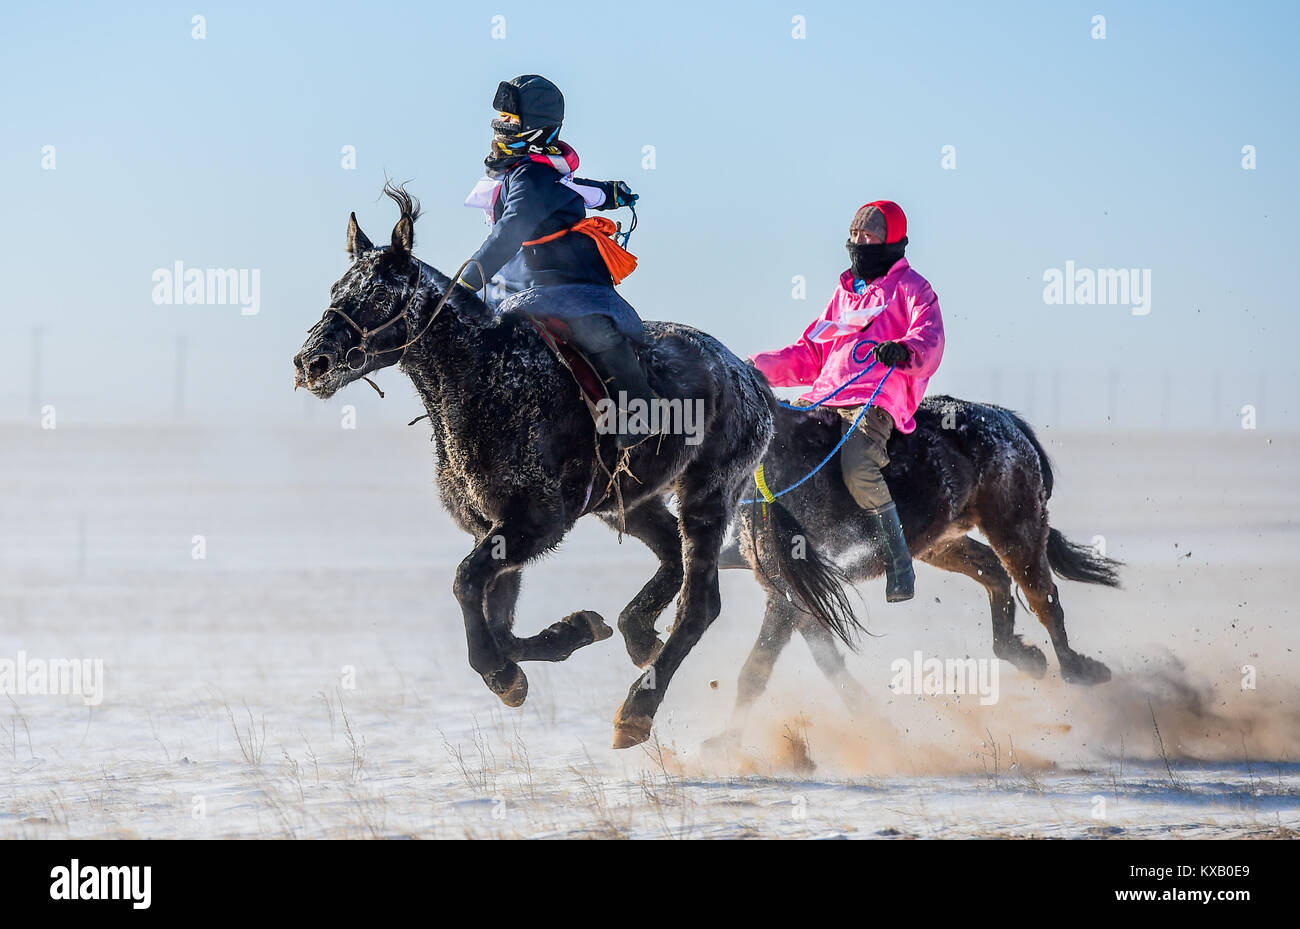 Sunite Bannière droite, la Région autonome de Mongolie intérieure. Jan 9, 2018. Riders en compétition dans une course de chevaux en Sunite Bannière droite du nord de la Chine, région autonome de Mongolie intérieure, le 9 janvier 2018. Juste un chameau, une fête traditionnelle locale y compris la course de chameaux et chevaux concours de beauté, a eu lieu dans la bannière mardi. Plus de 200 chameaux ont pris part à la foire. Credit : Lian Zhen/Xinhua/Alamy Live News Banque D'Images